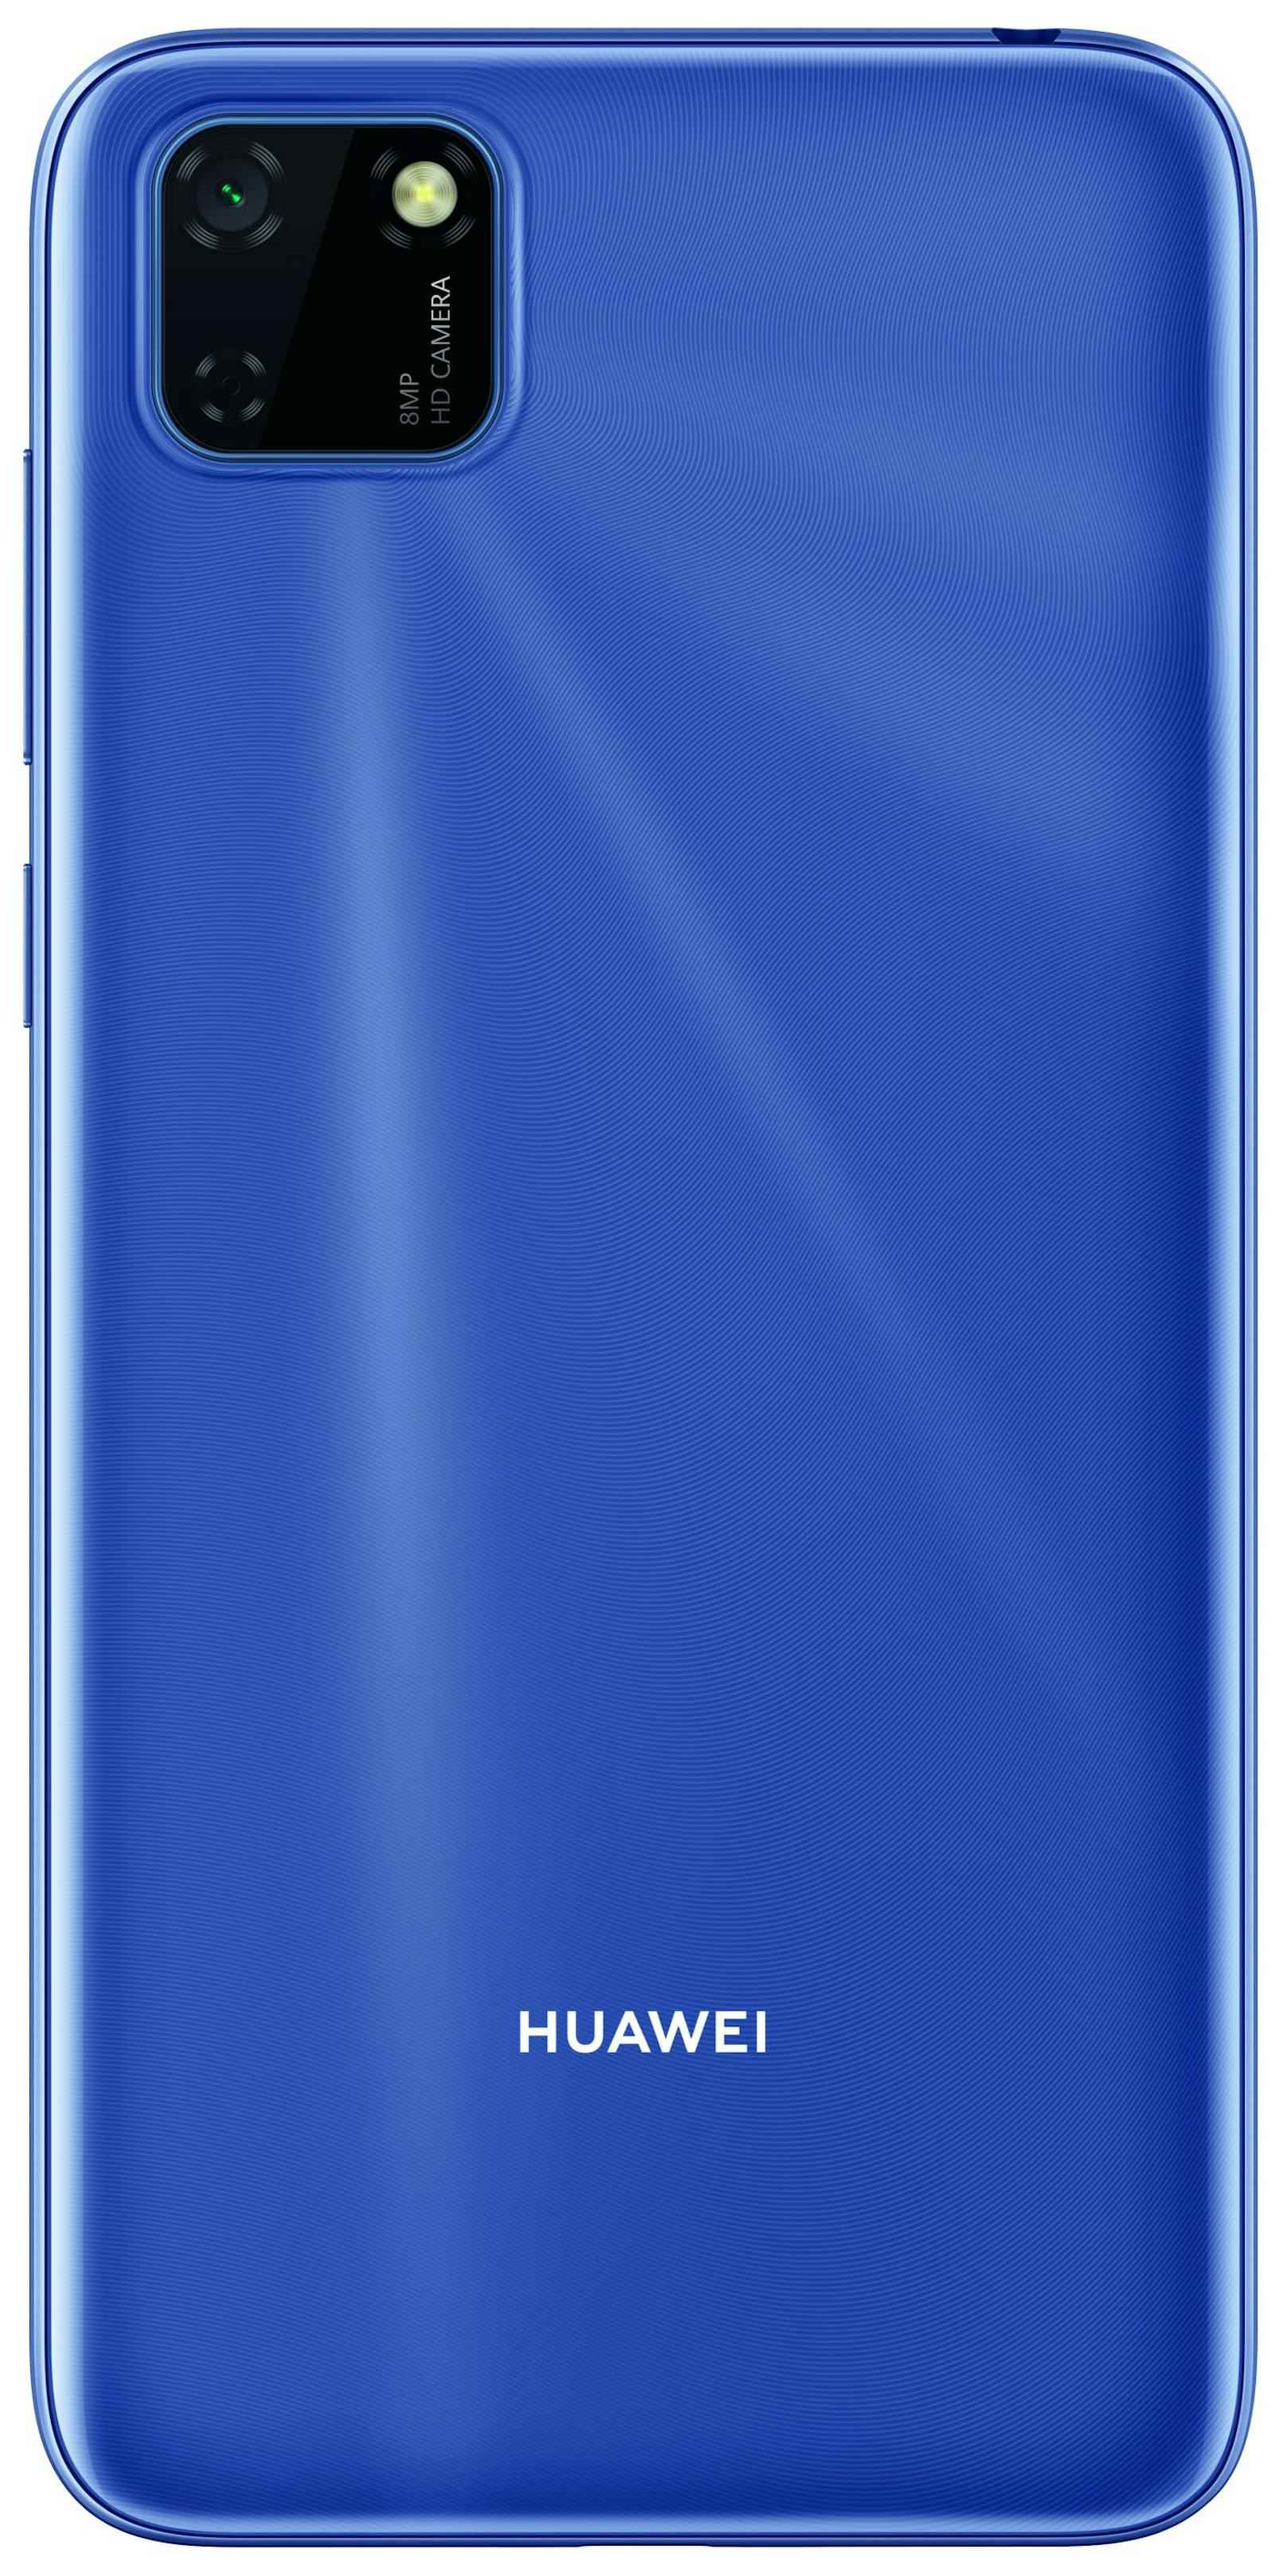 Das Huawei Y5p besitzt ein 5,45-Zoll-Vollbild-Display.